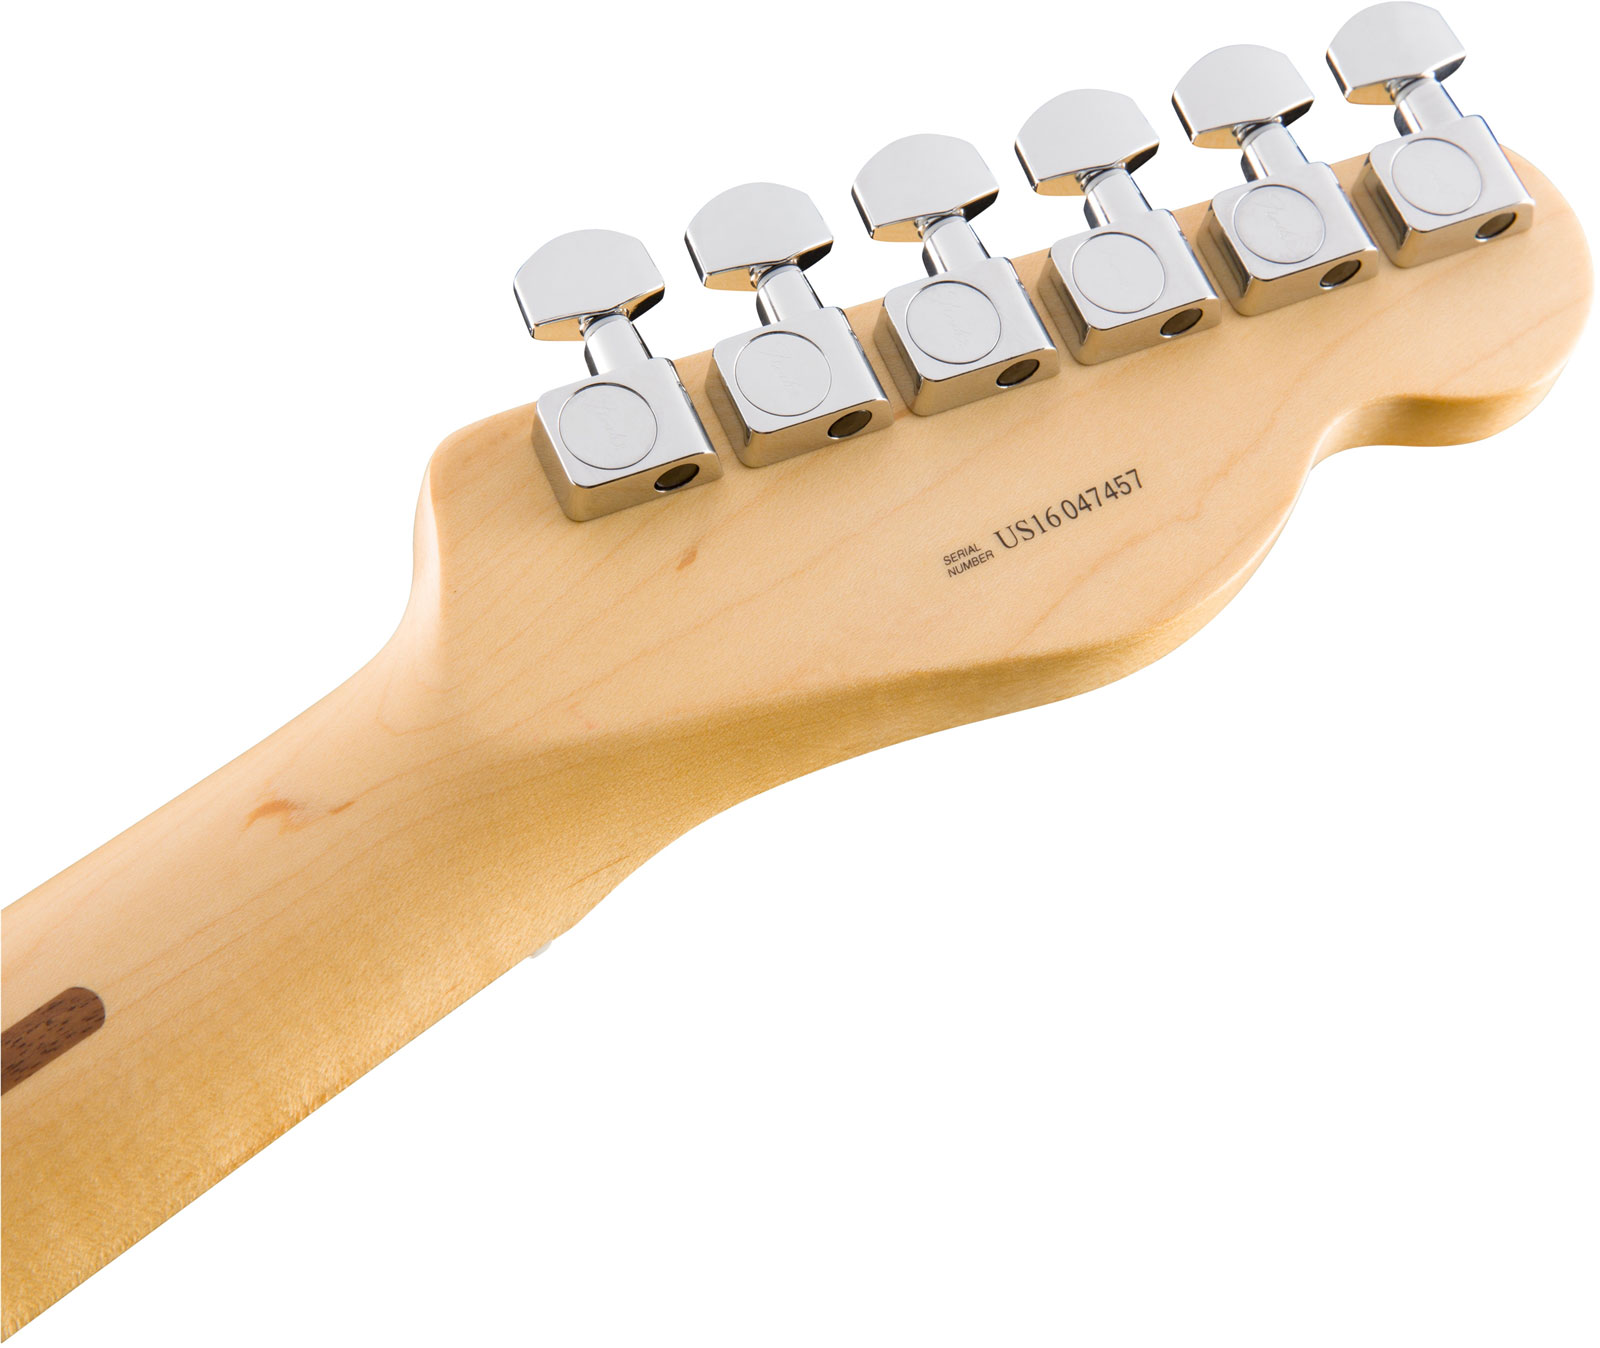 Fender Tele American Professional Lh Usa Gaucher 2s Mn - Butterscotch Blonde - Guitarra electrica para zurdos - Variation 4